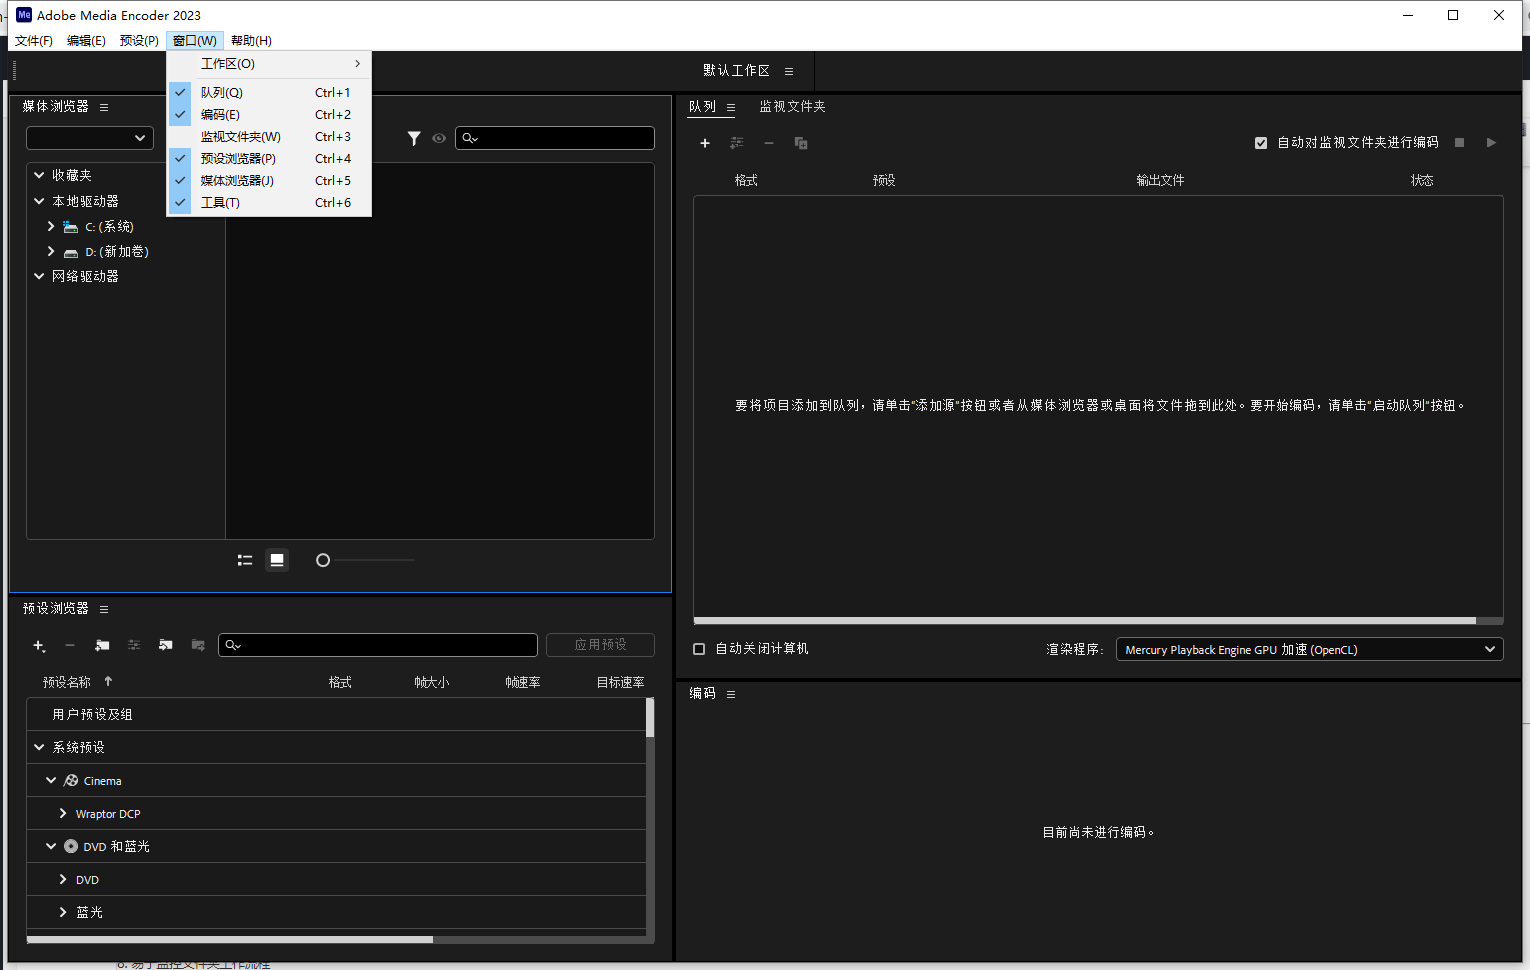 Adobe Media Encoder 2023 v23.6.0.62 instal the new